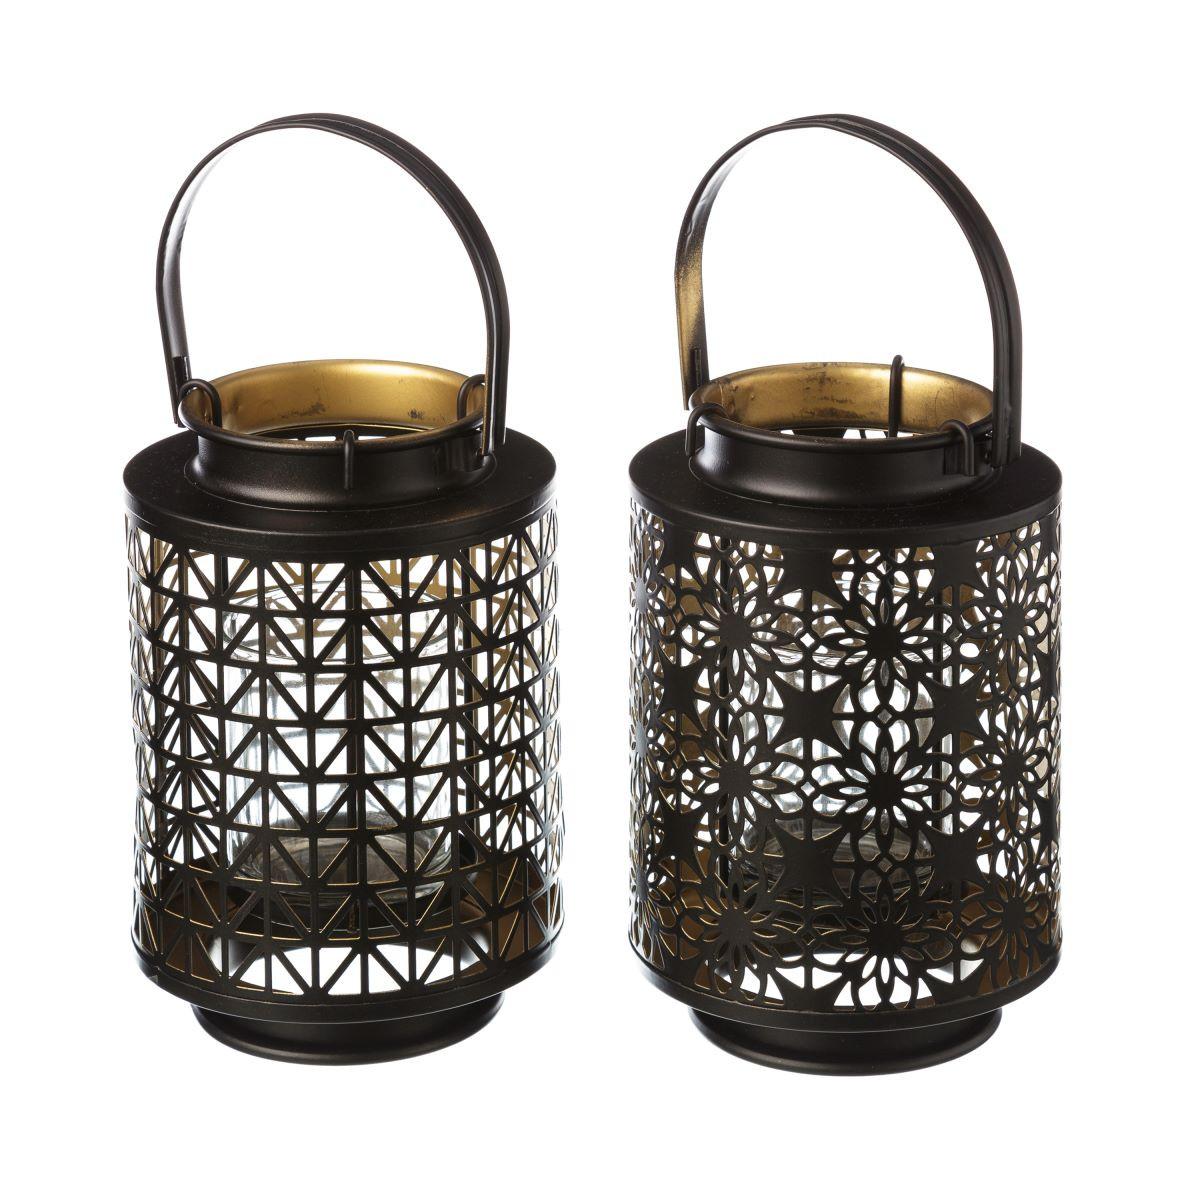 Sublimes lanternes à prix mini...Rdv dans votre boutique ❤